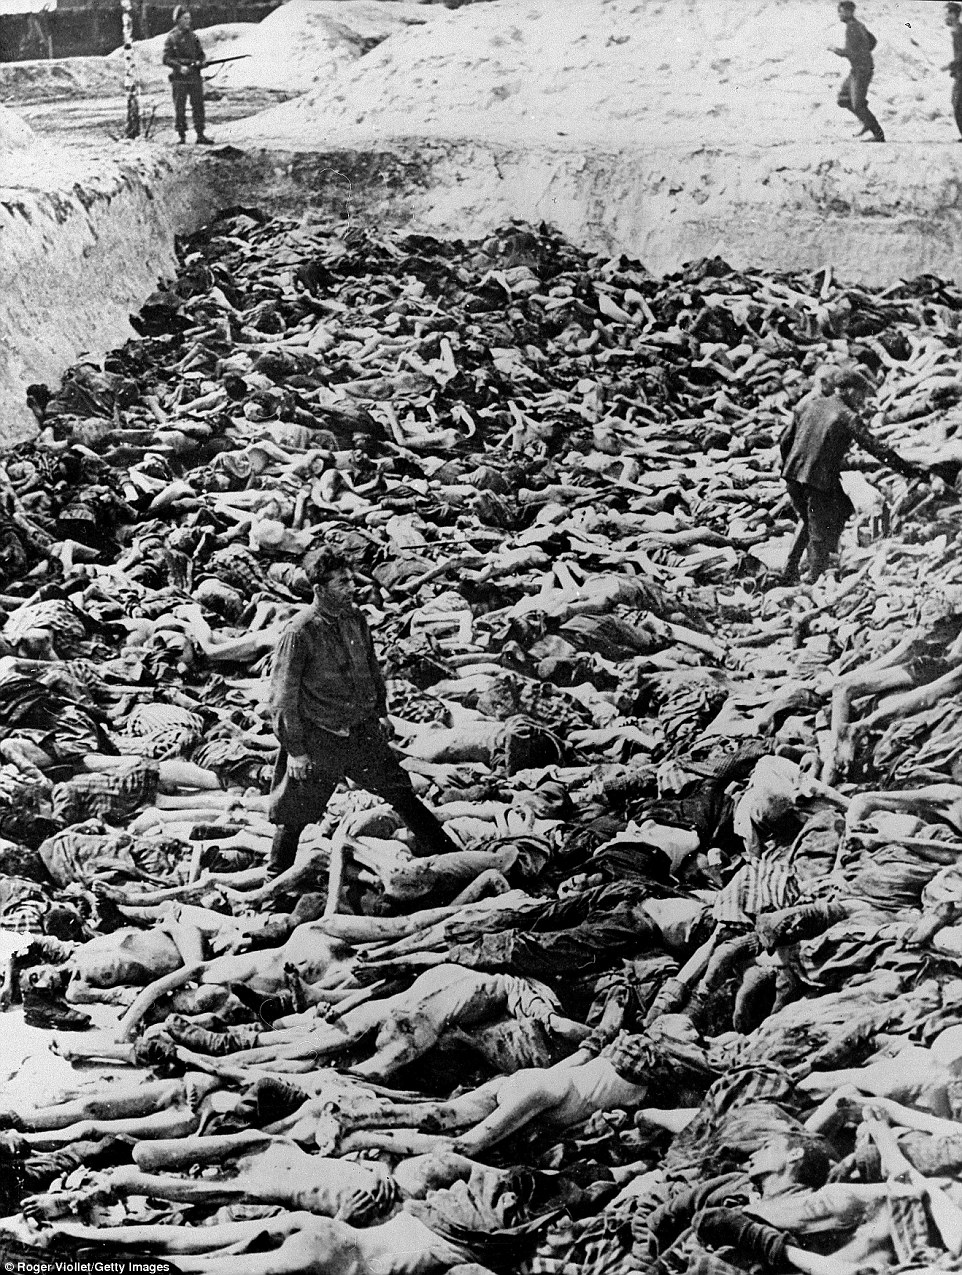 Tháng 4-1945, Fritz Klein, một bác sĩ của trại tập trung Đức quốc xã (người đã từng làm các thí nghiệm y tế trên các tù nhân trong các cuộc tàn sát mang tên Holocaust) đứng giữ các xác chết tại một ngôi mộ tập thể lớn sau khi Bergen-Belsen, Đức được giải phóng. Trong số 38.500 tù nhân được tìm thấy, hầu như không ai sống sót, khoảng 28.000 người đã chết sau đó. Tháng 12-1945, Klein bị tuyên án tử hình vì các tội ác của hắn.